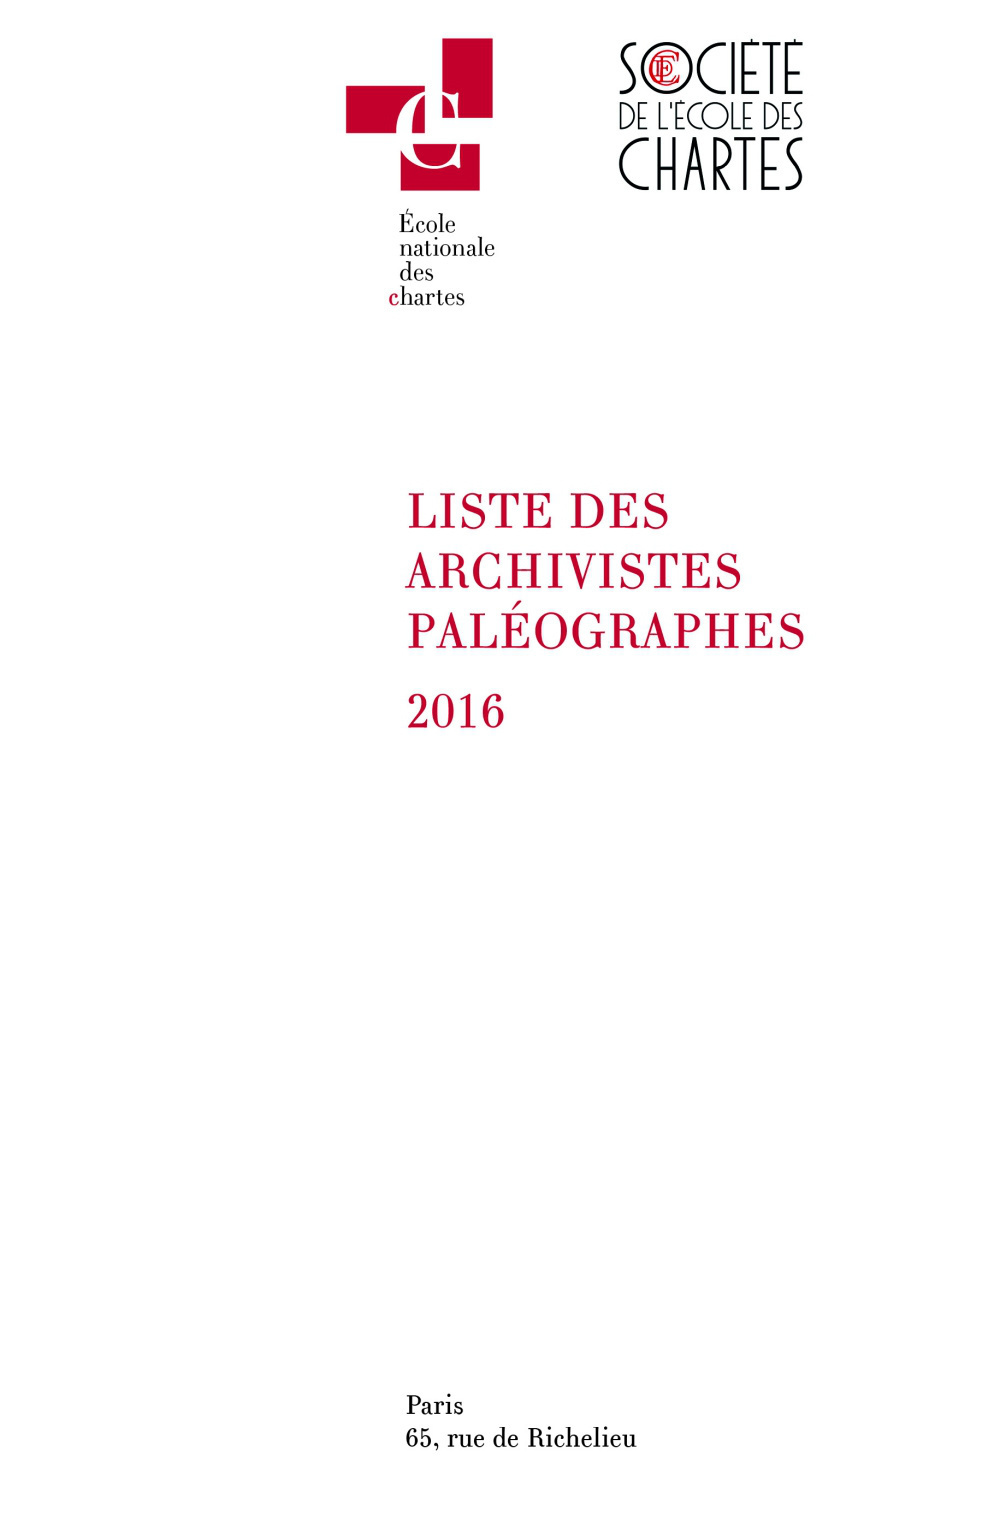 Couverture de la Liste des archivistes paléographes 2016